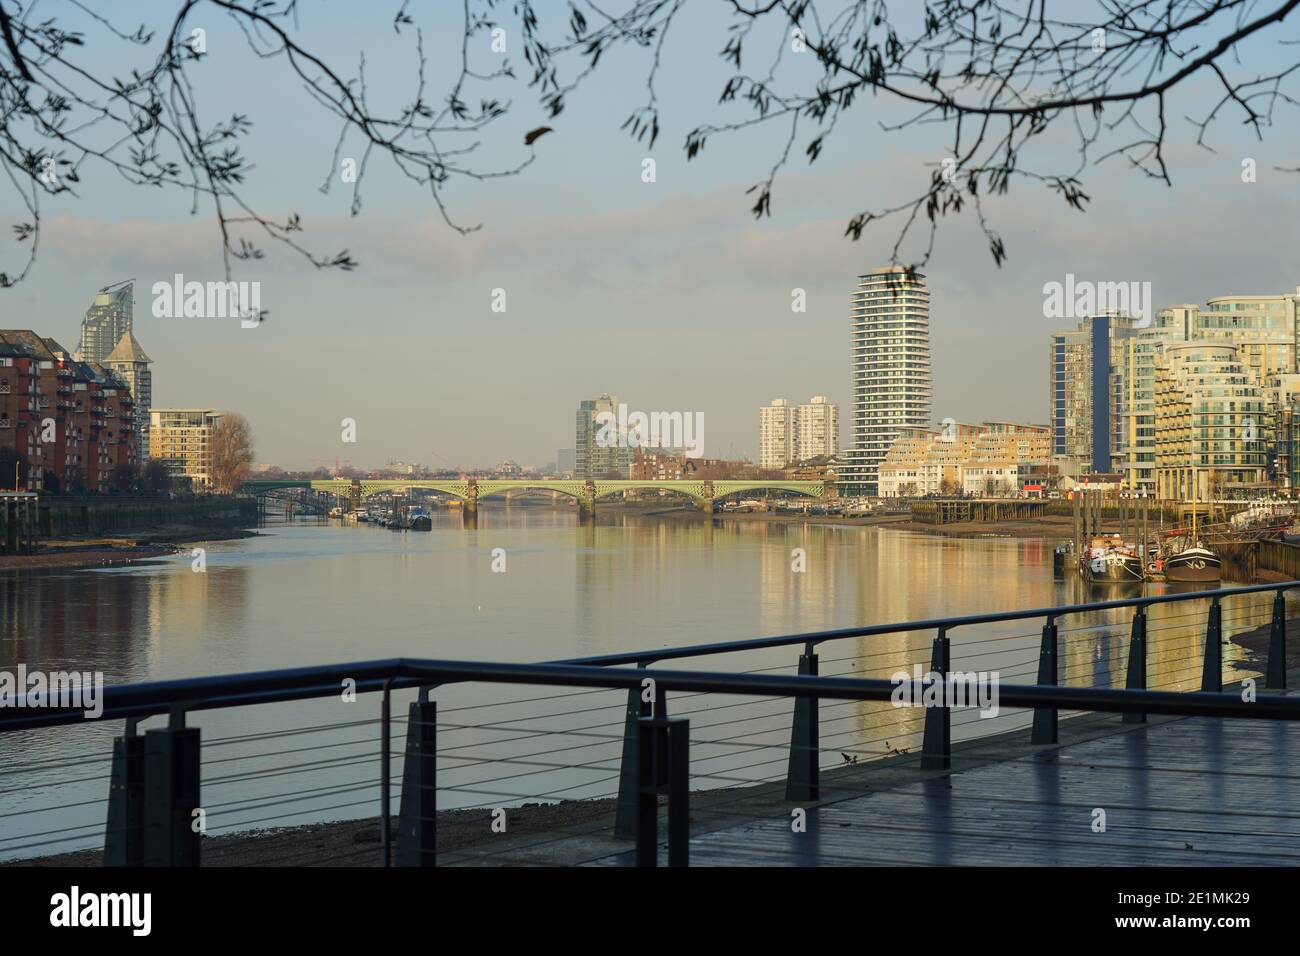 Une vue sur la Tamise à Wandsworth, avec le pont de chemin de fer de Battersea au loin. Date de la photo : jeudi 7 janvier 2021. Photo: Roger Garfield/Alamy Banque D'Images